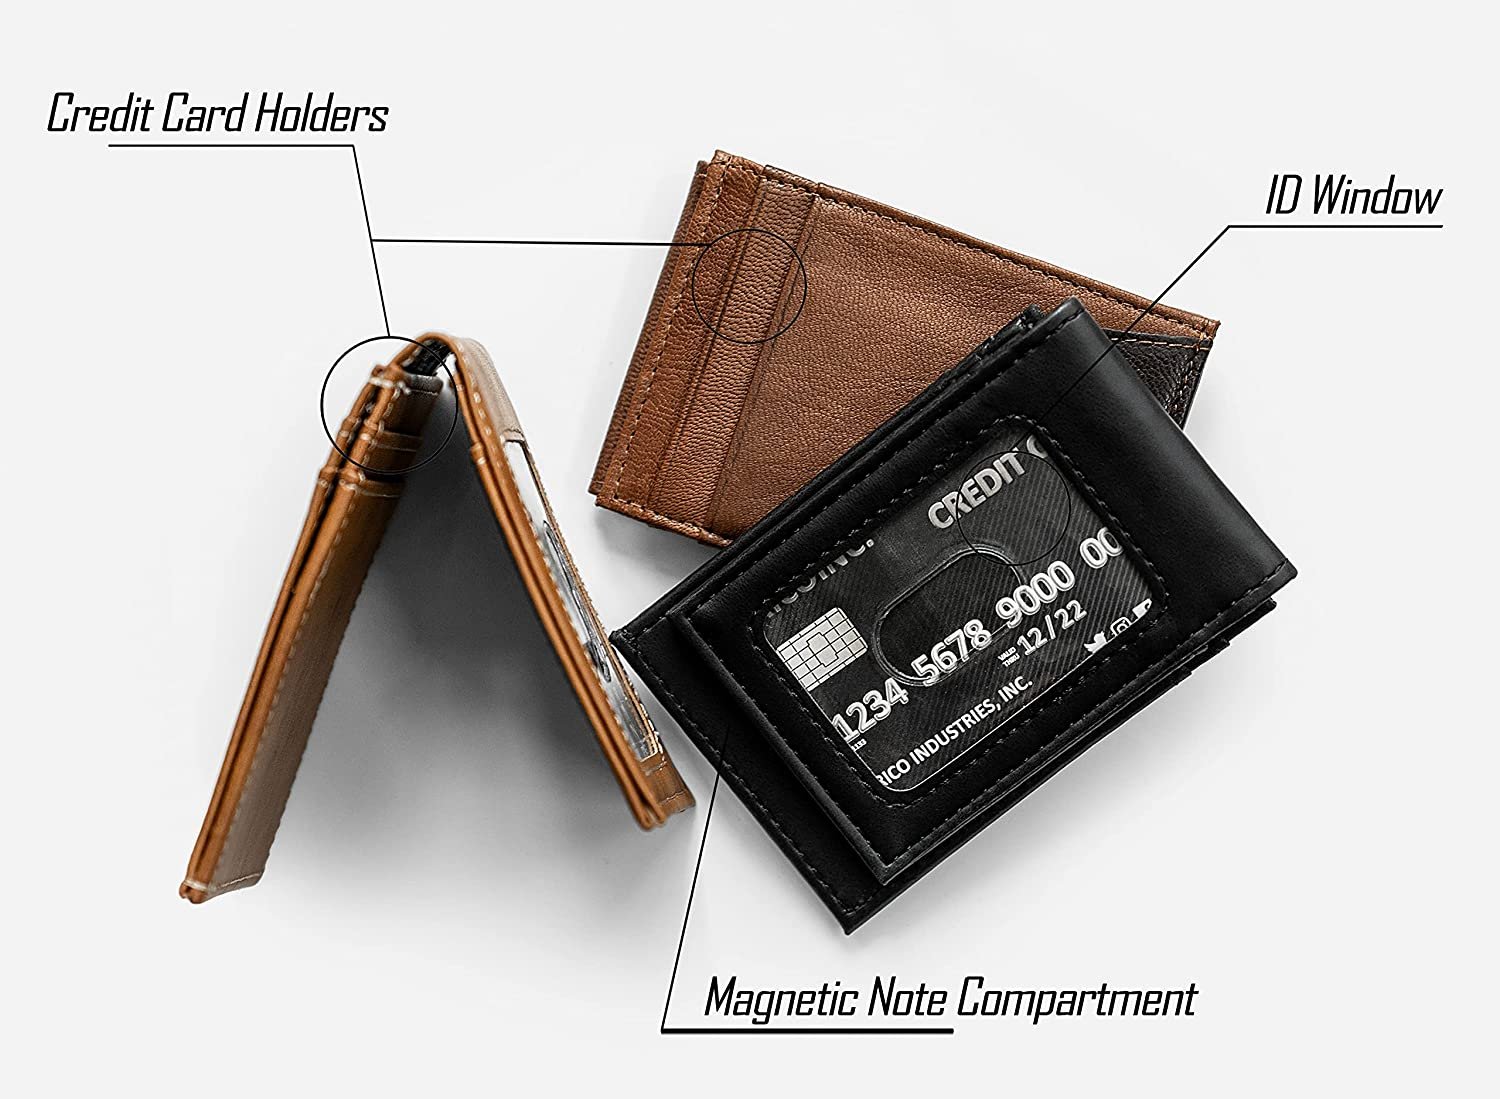 Vegas Golden Knights Premium Brown Leather Wallet, Front Pocket Magnetic Money Clip, Laser Engraved, Vegan